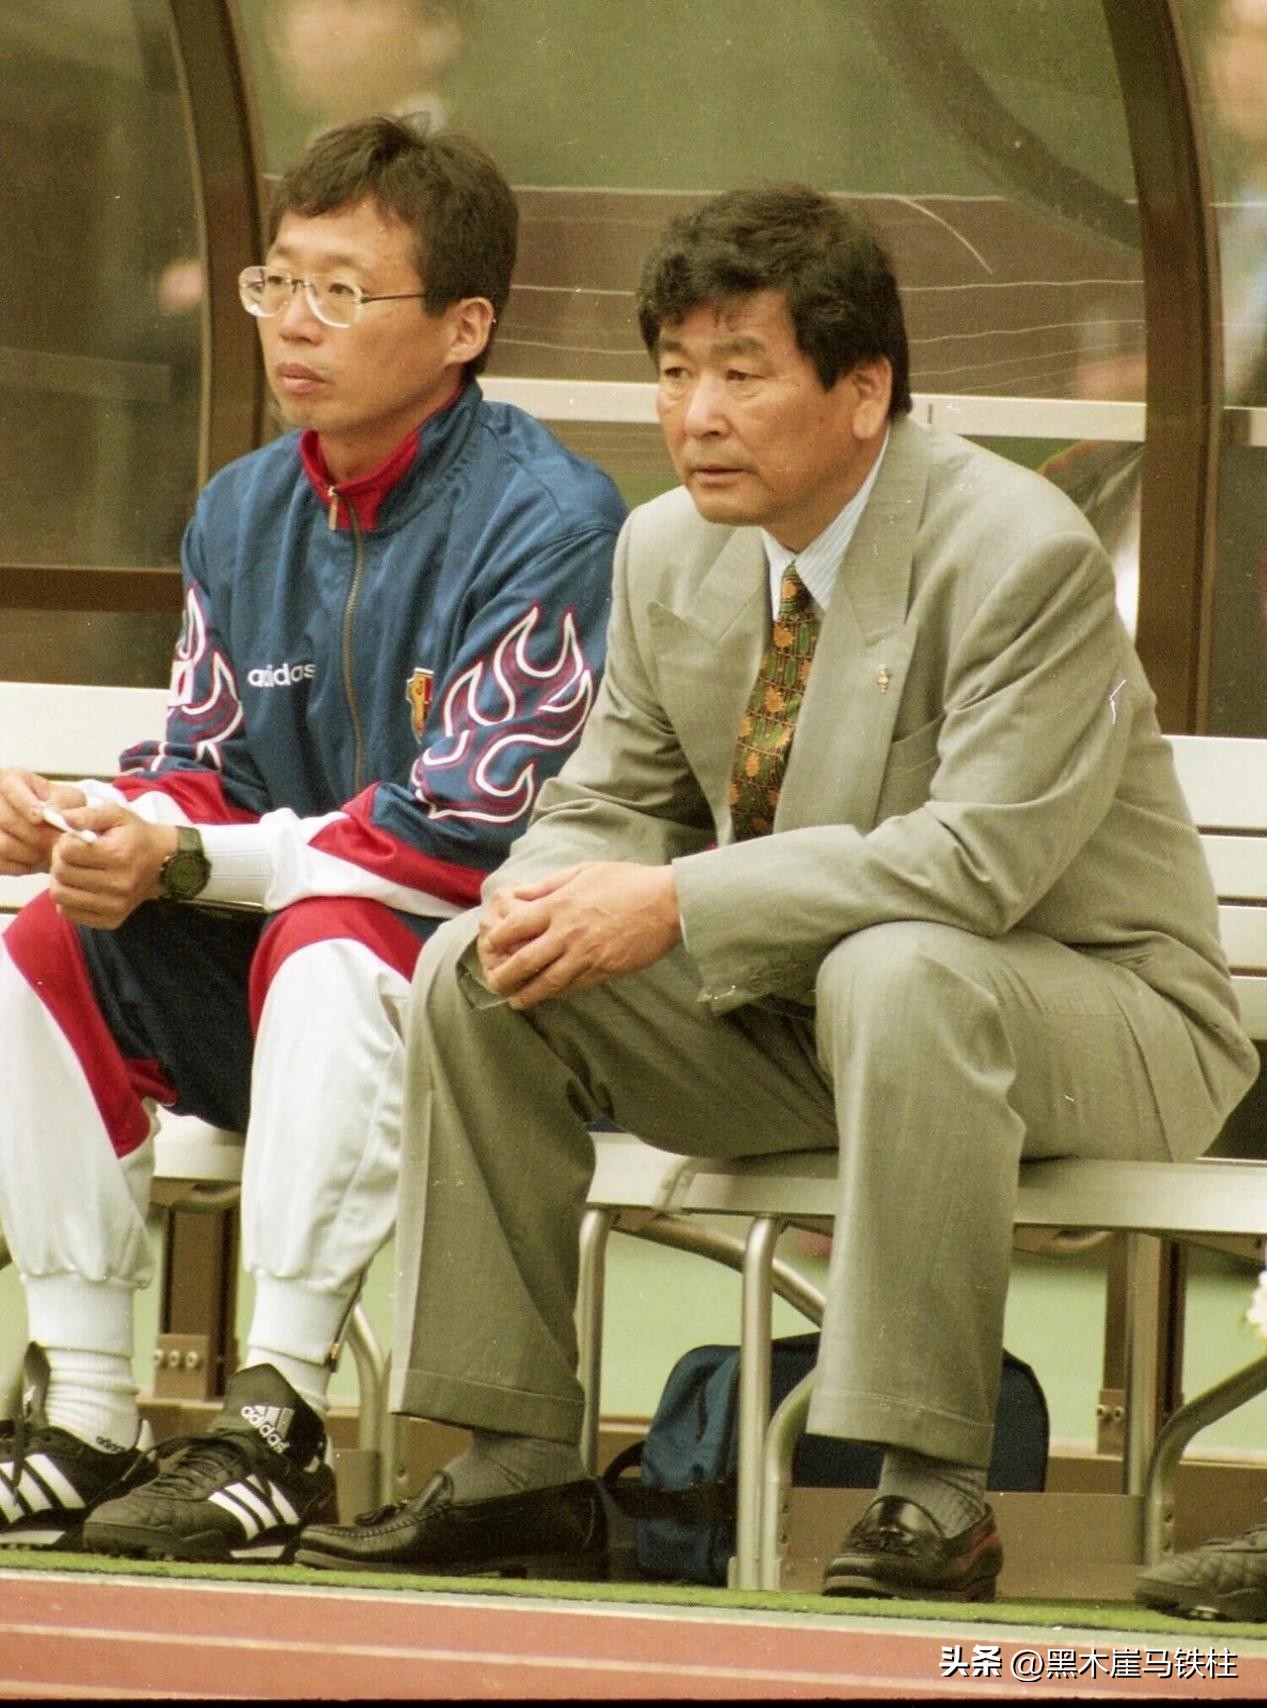 崛起新山之战，摒弃功臣三浦知良，1998年日本足球那些事